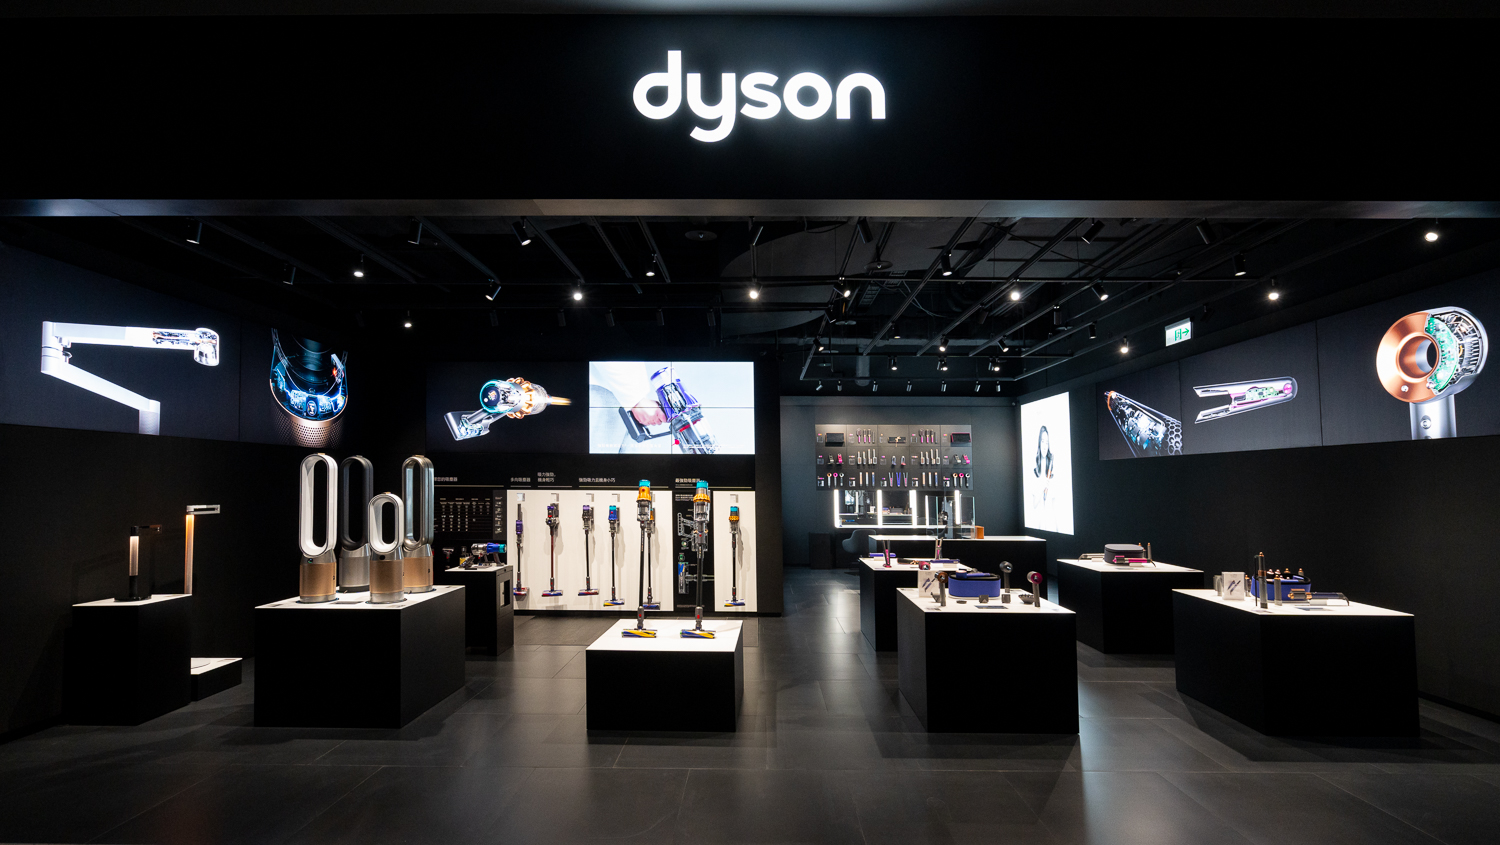 全台首間 Dyson 體驗店正式進駐台北新光三越 A11 館 新型態互動體驗讓科技走進生活　 @3C 達人廖阿輝